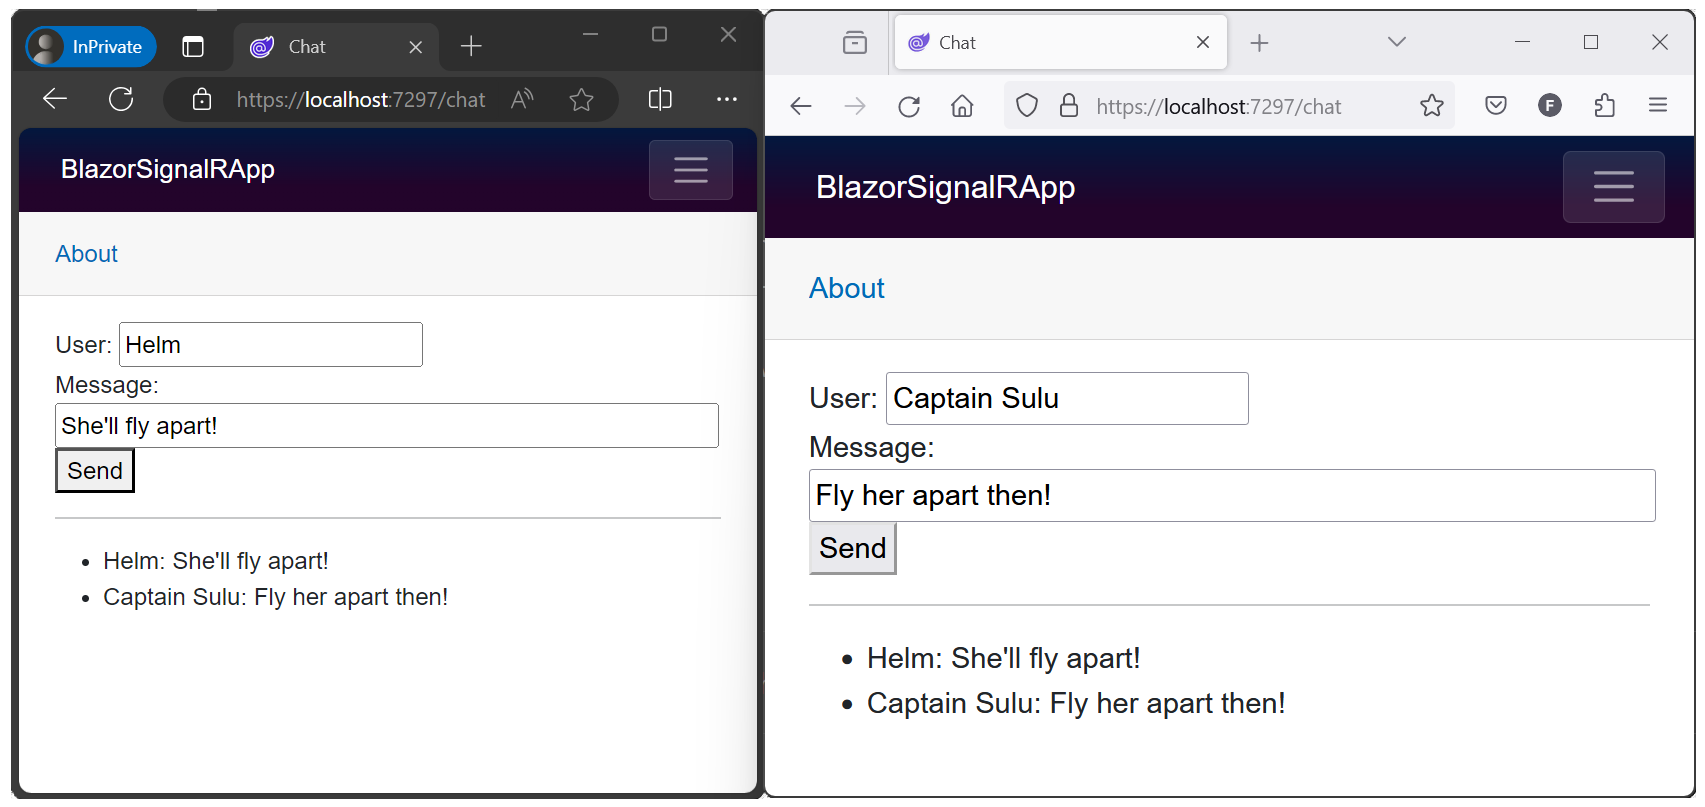 交換されたメッセージが表示されている、2 つのブラウザー ウィンドウで開かれた SignalRBlazor サンプル アプリ。